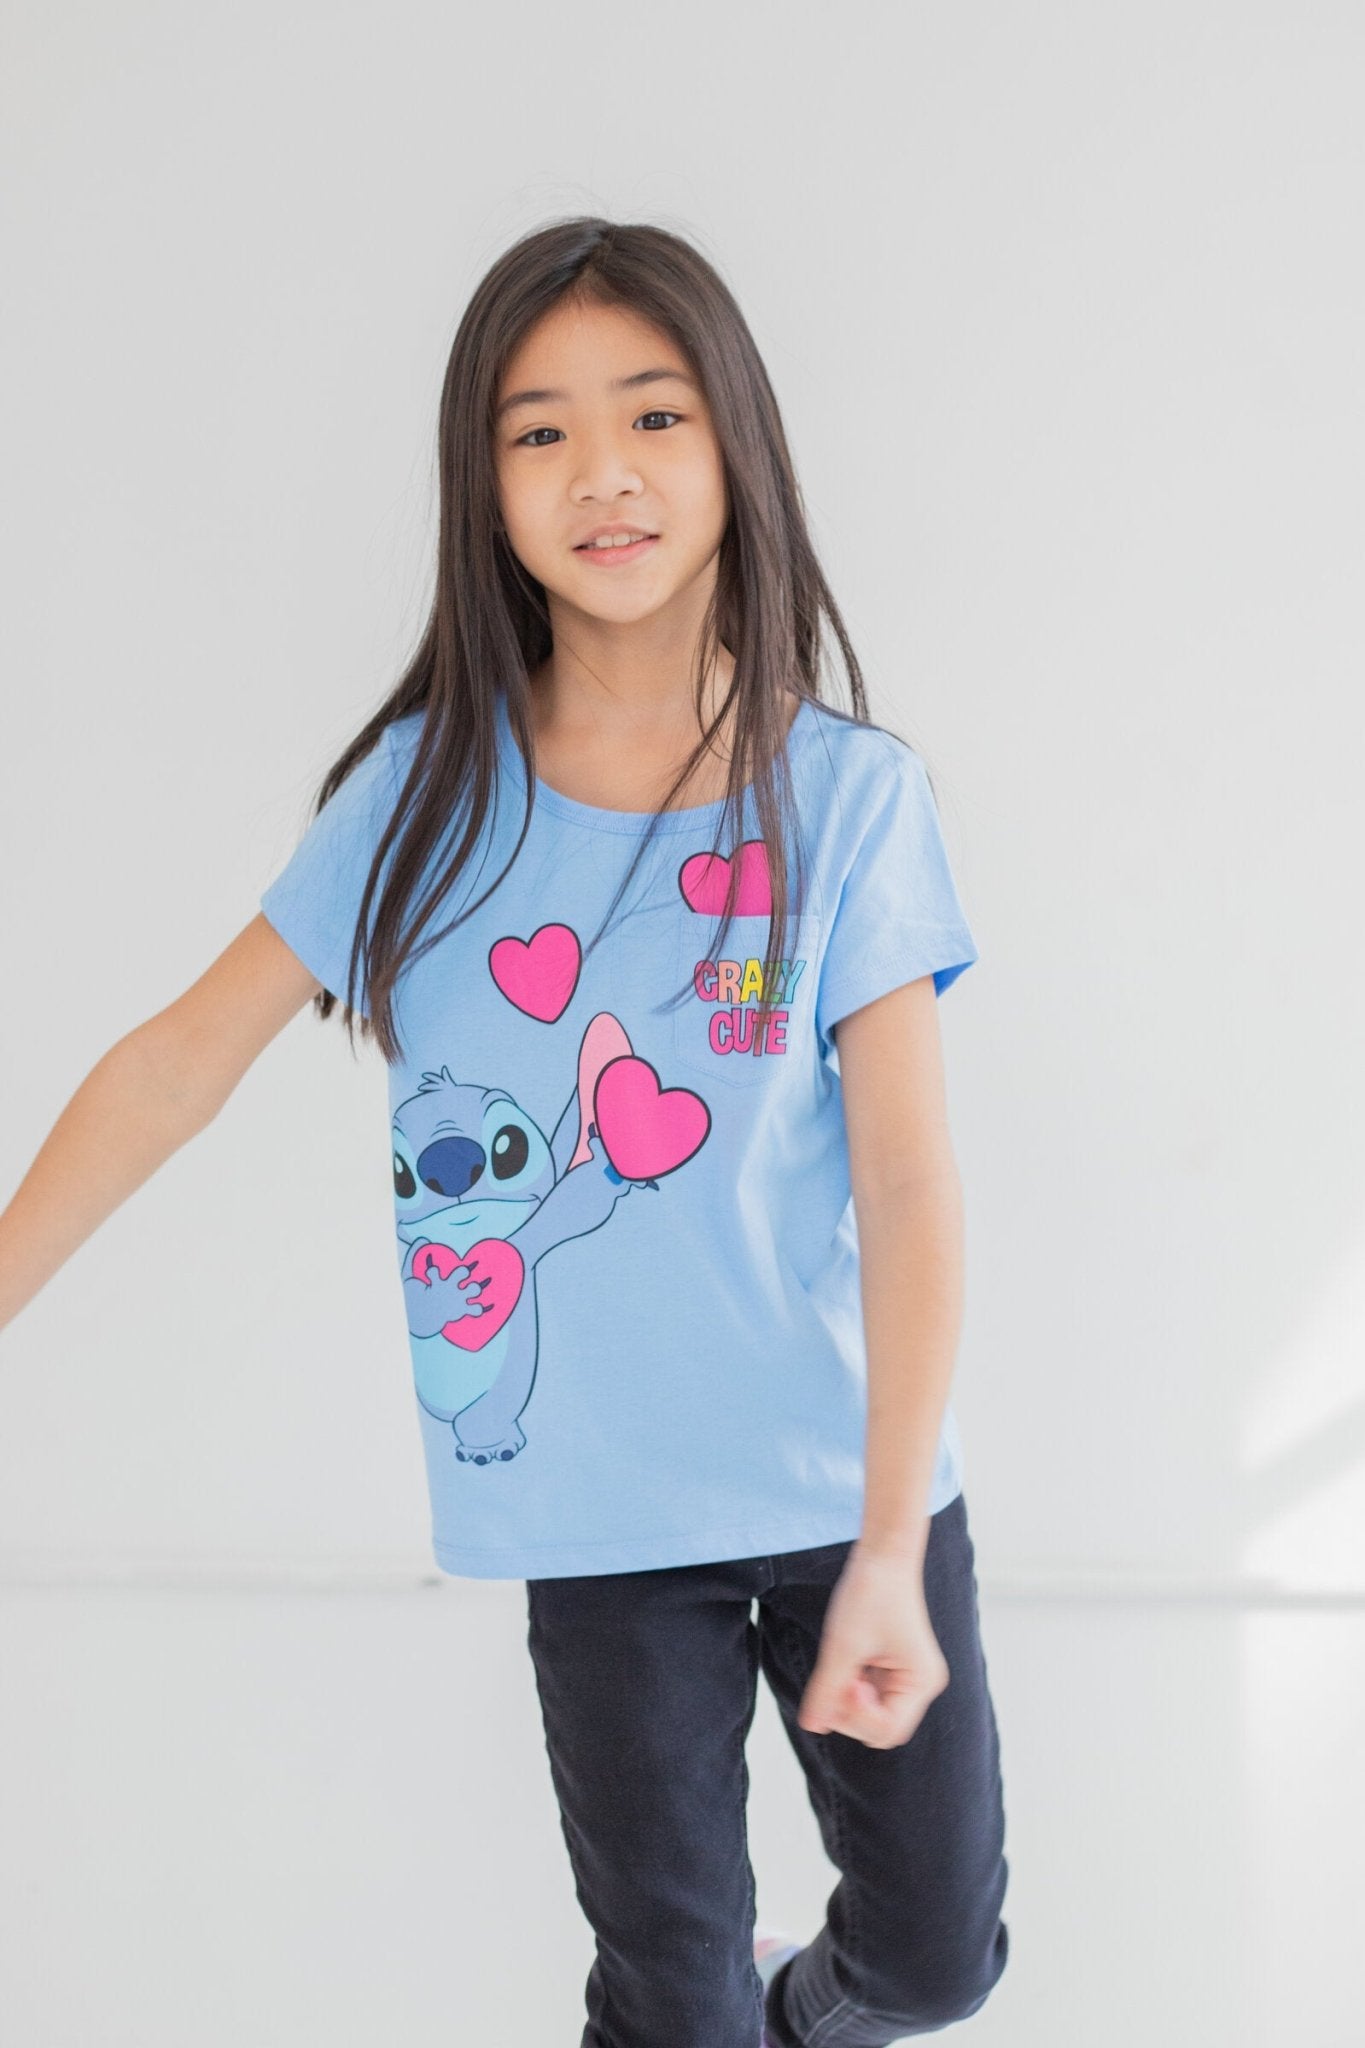 Lilo & Stitch Graphic T-Shirt - imagikids